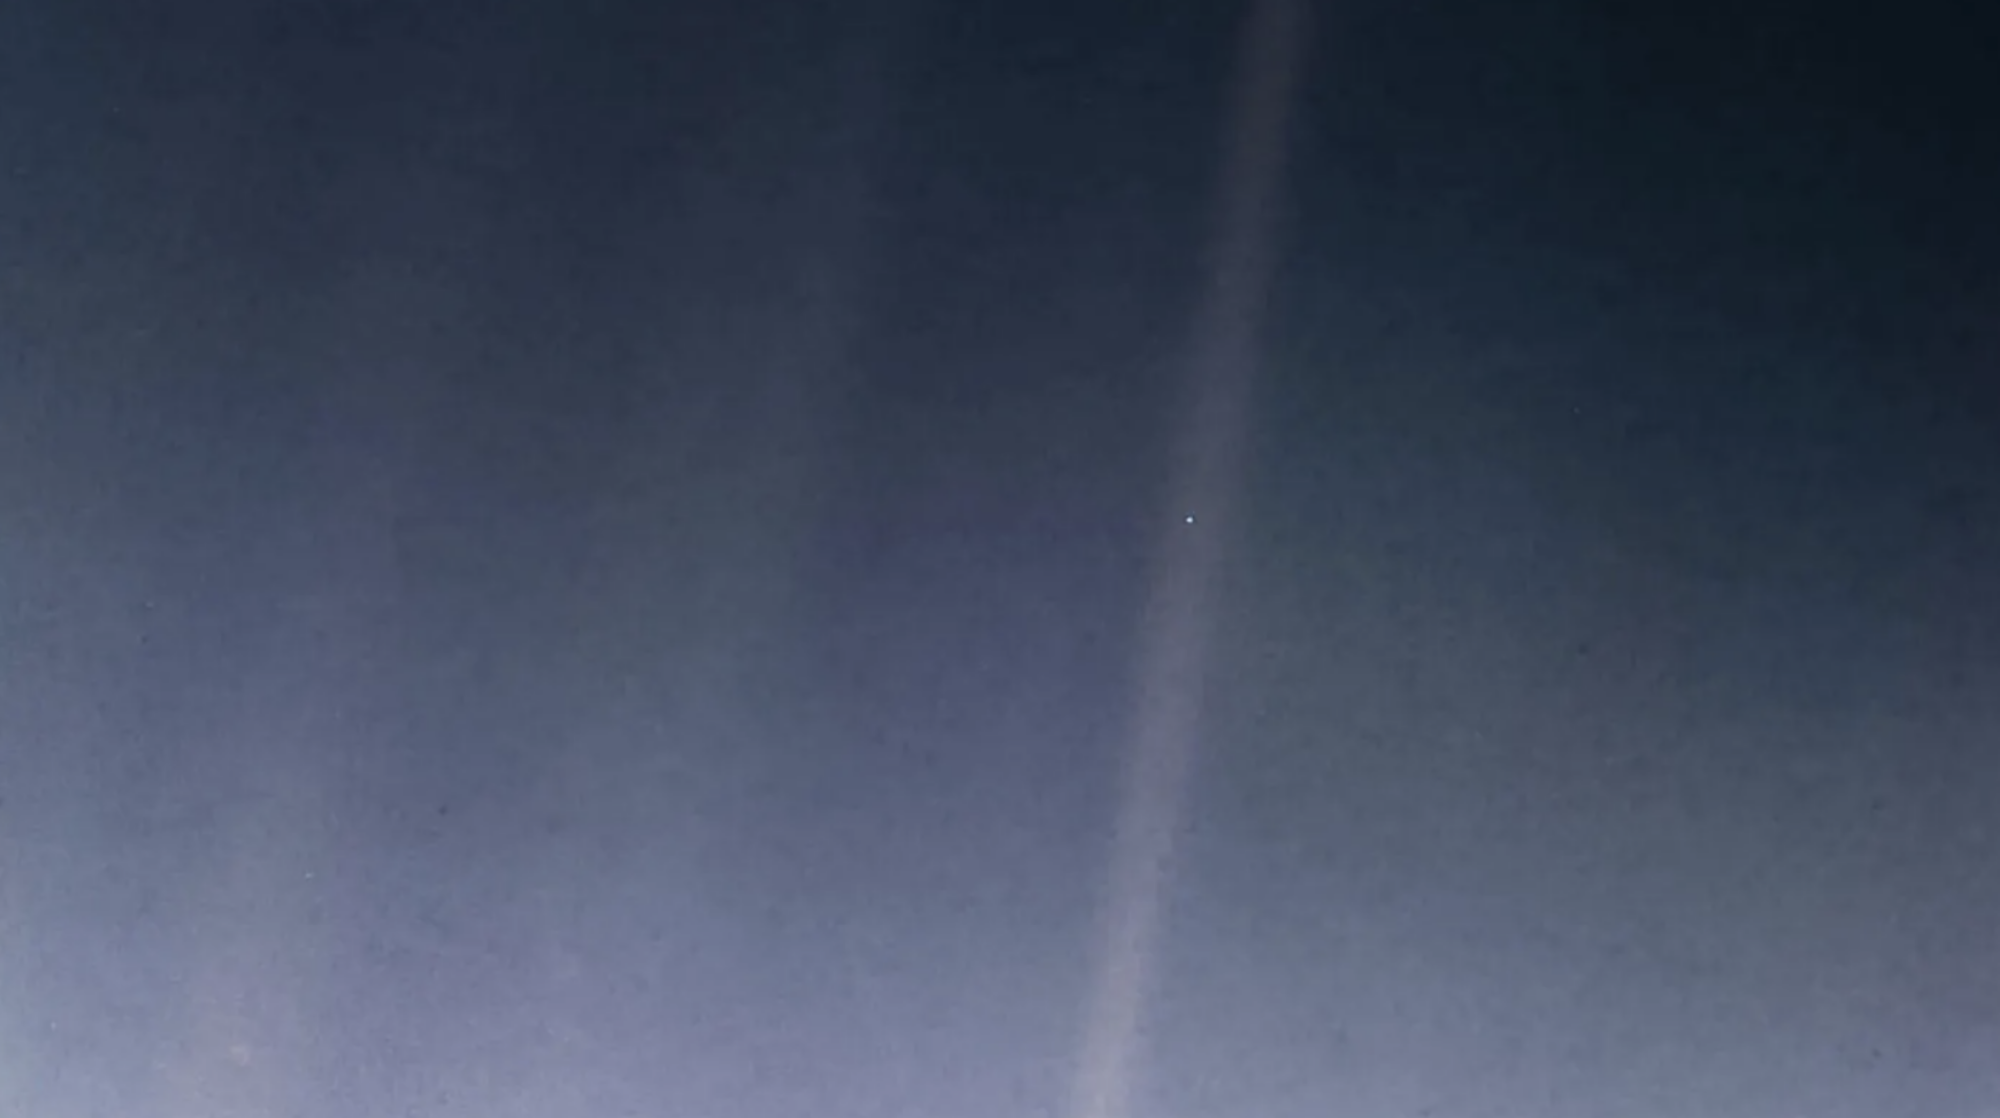 Le « Pale Blue Dot », ou Terre, capturé par le vaisseau spatial Voyager 1.